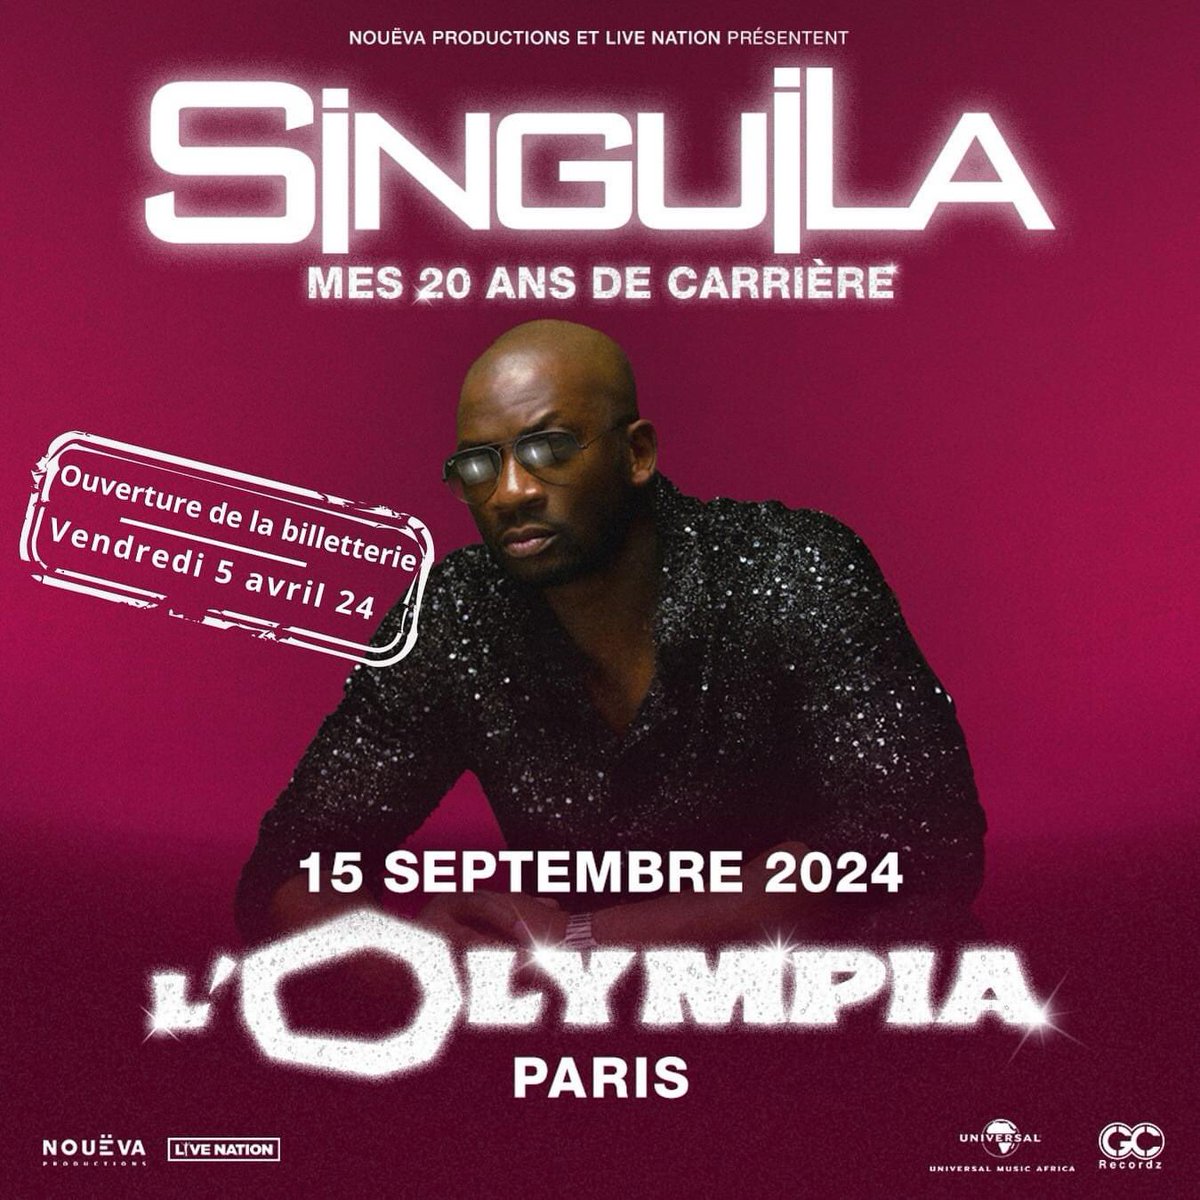 [ÉVÉNEMENT 📣🚨] 

L'artiste @SinguilaMusic célébrera ses #20ans de carrière à @OLYMPIAHALL le 15 septembre prochain 🇫🇷🔥

@U_M_Africa @LivenationFR 

#LaGrandeCauserie #LGC #Singuila 🎵🚨